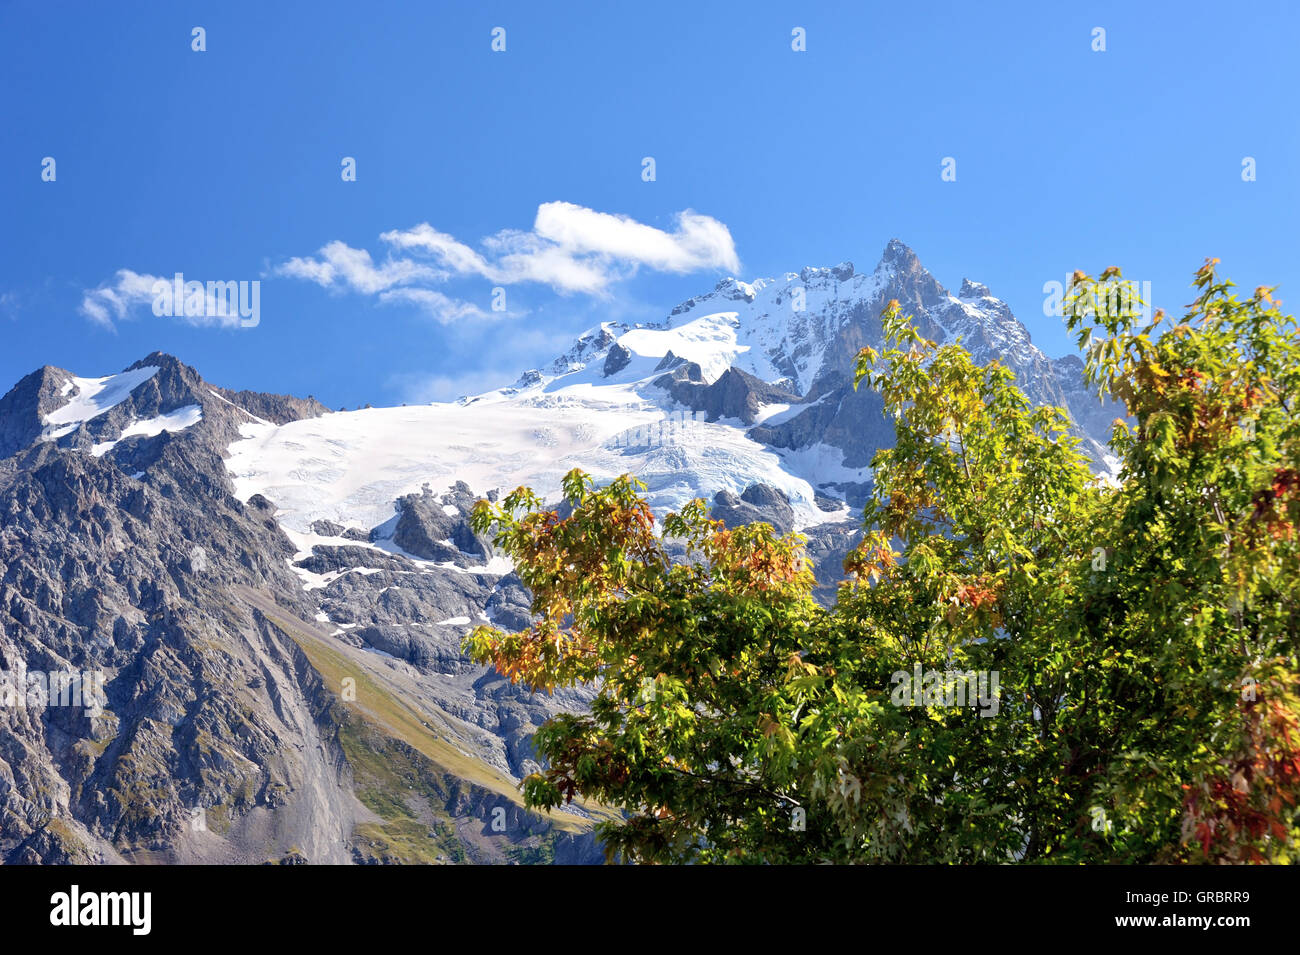 Atumnful couleur Arbre et neige sur la montagne La Meije, Alpes, France Banque D'Images